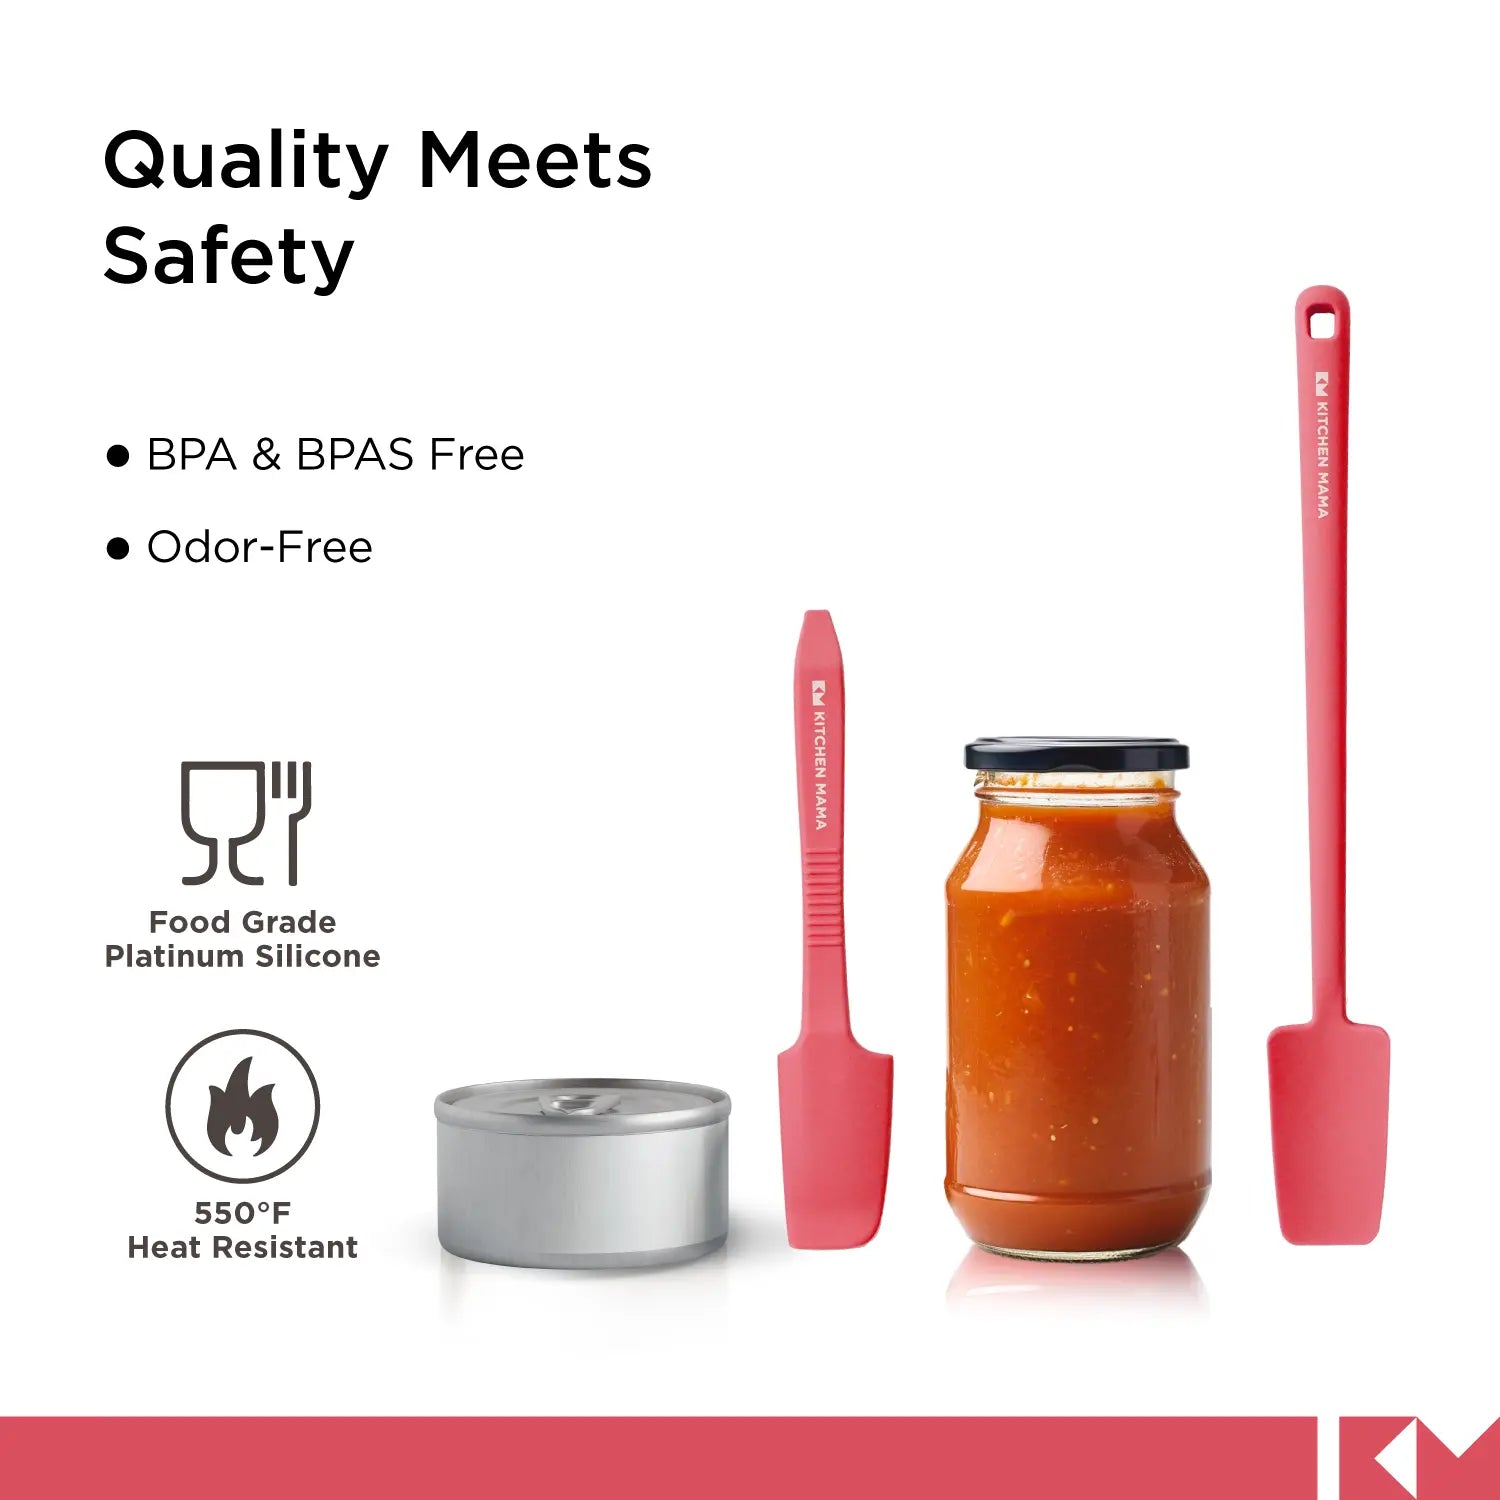 Espátulas de silicona para tarros y latas, SP0420-R, rojo, la calidad se une a la seguridad, sin BPA ni BPAS, sin olores, silicona platino de calidad alimentaria